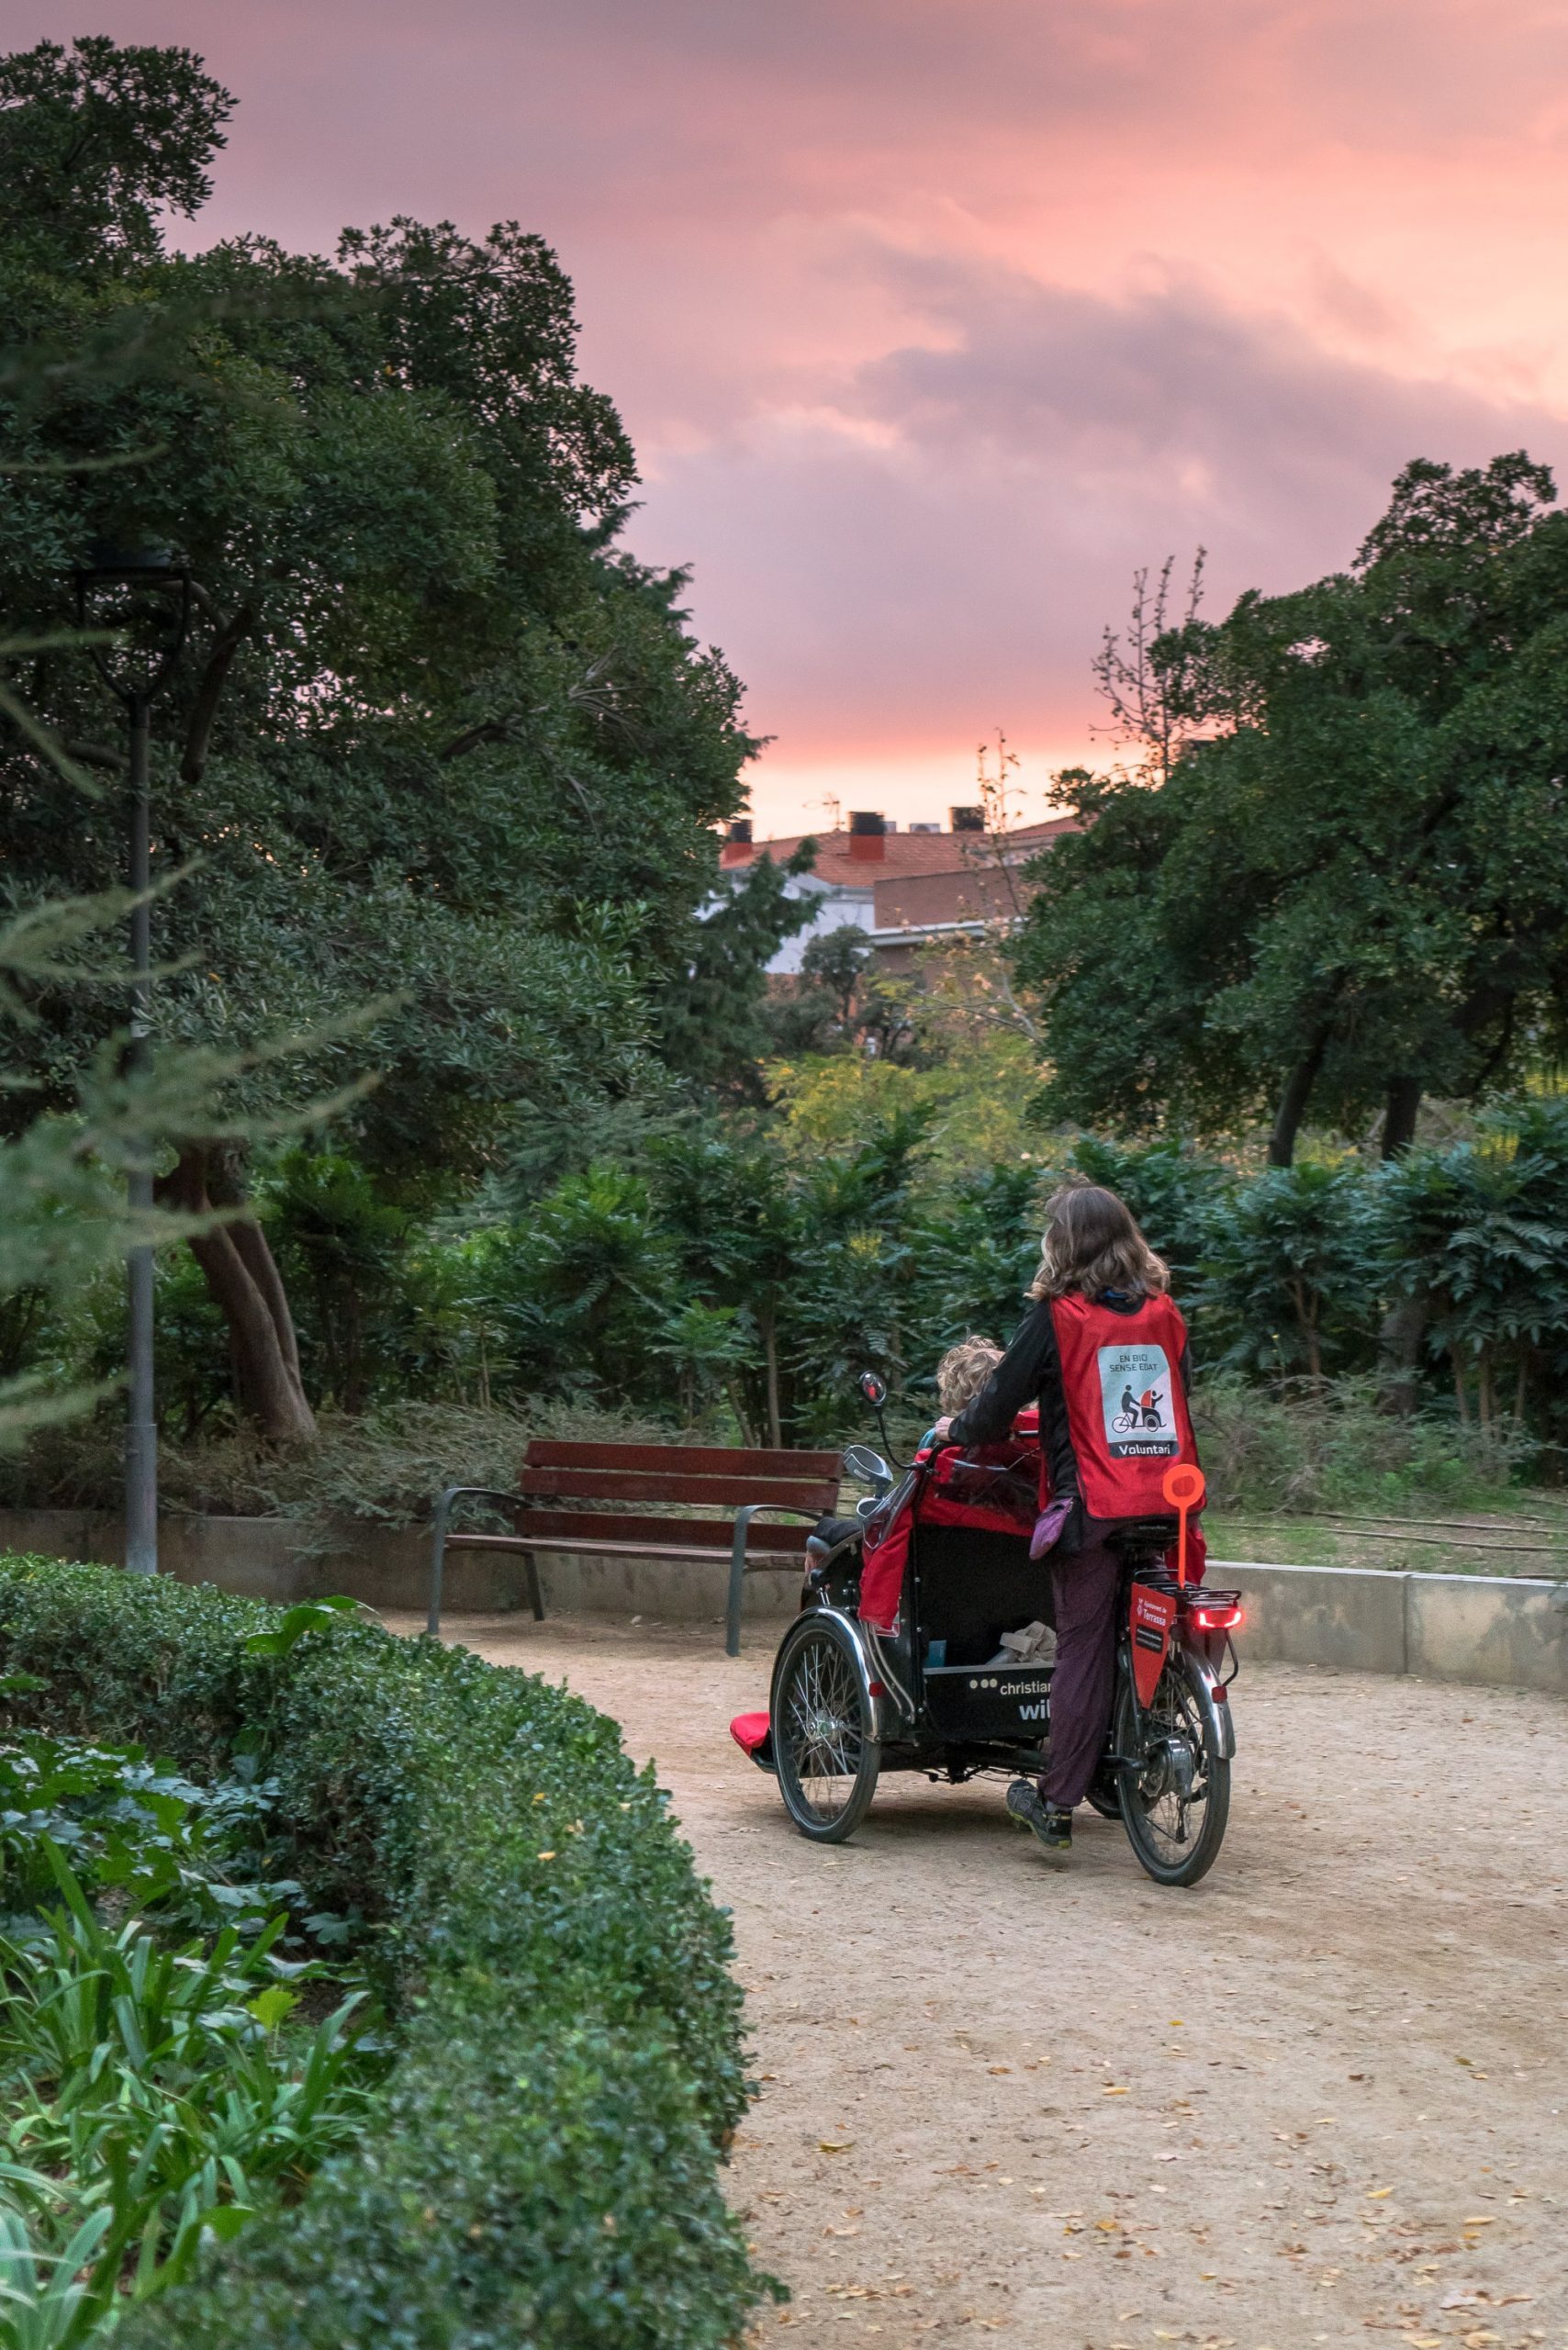 Una voluntaria conduce un tricicle de Bici Sense Edat. Es una imagen de Retícula, el banco de imágenes social y libre.